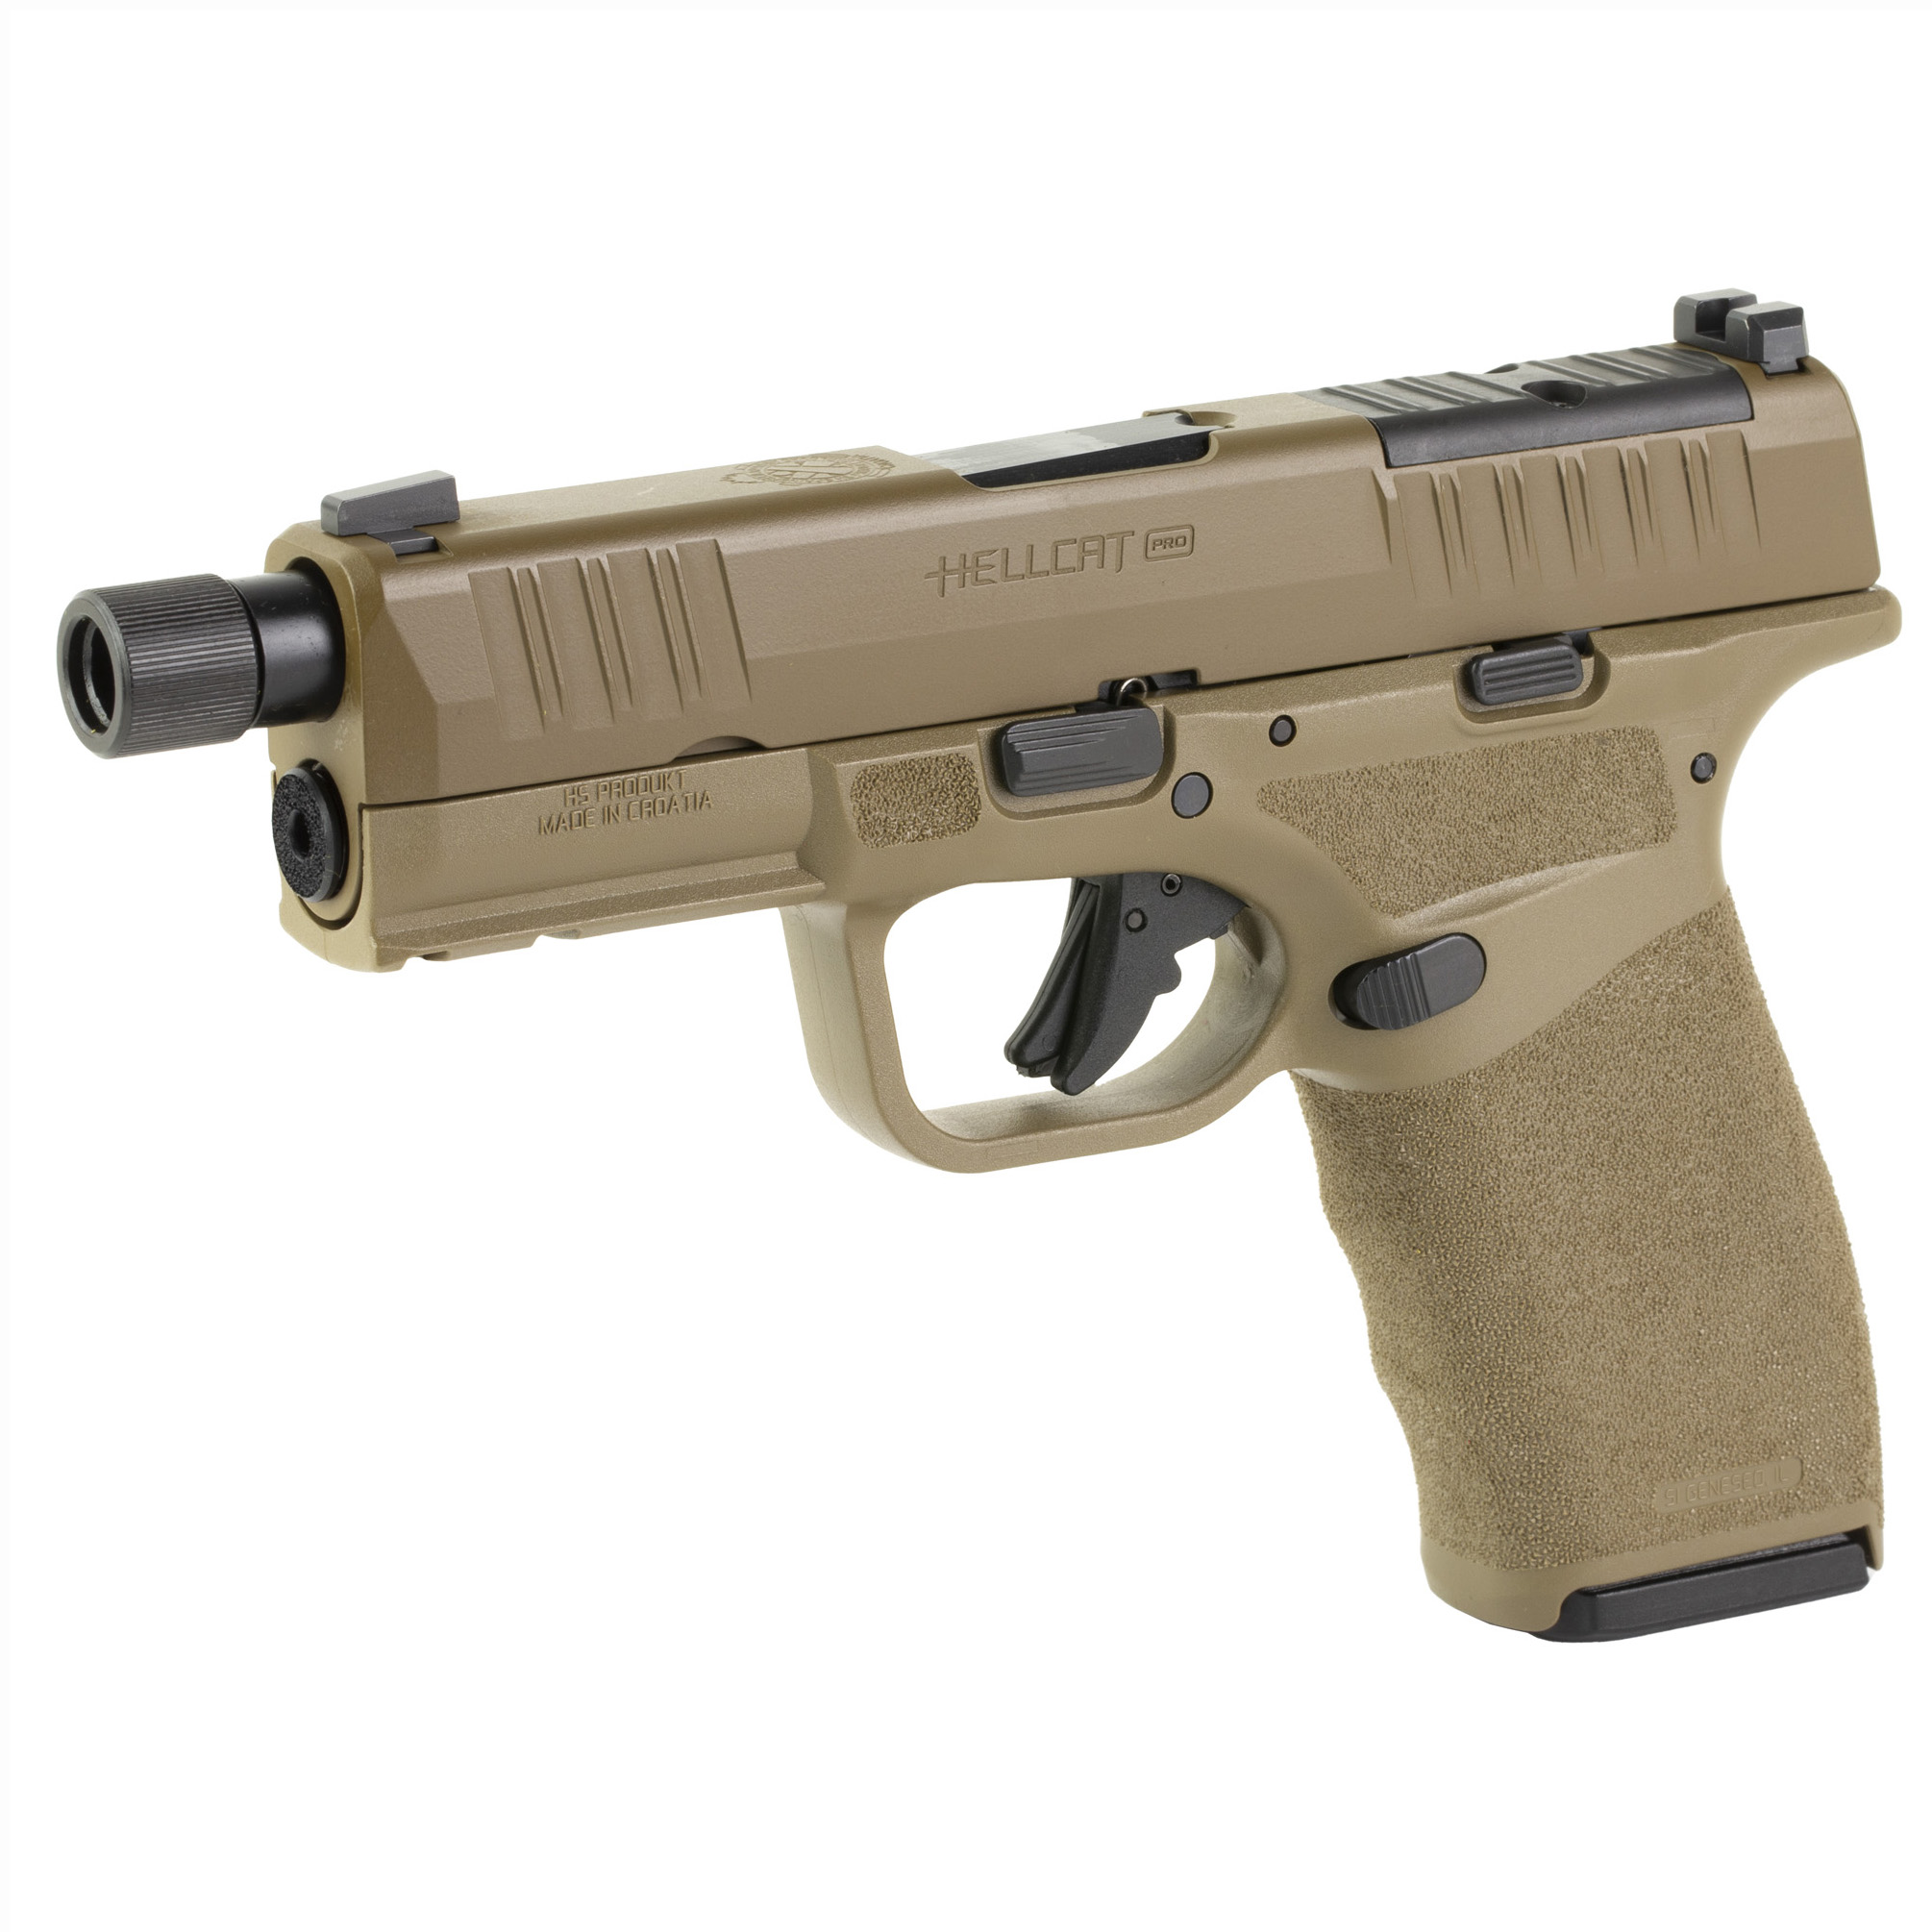 AR Overmolded Enhanced Pistol Grip - BLACK, 20 DEG - Breakthrough